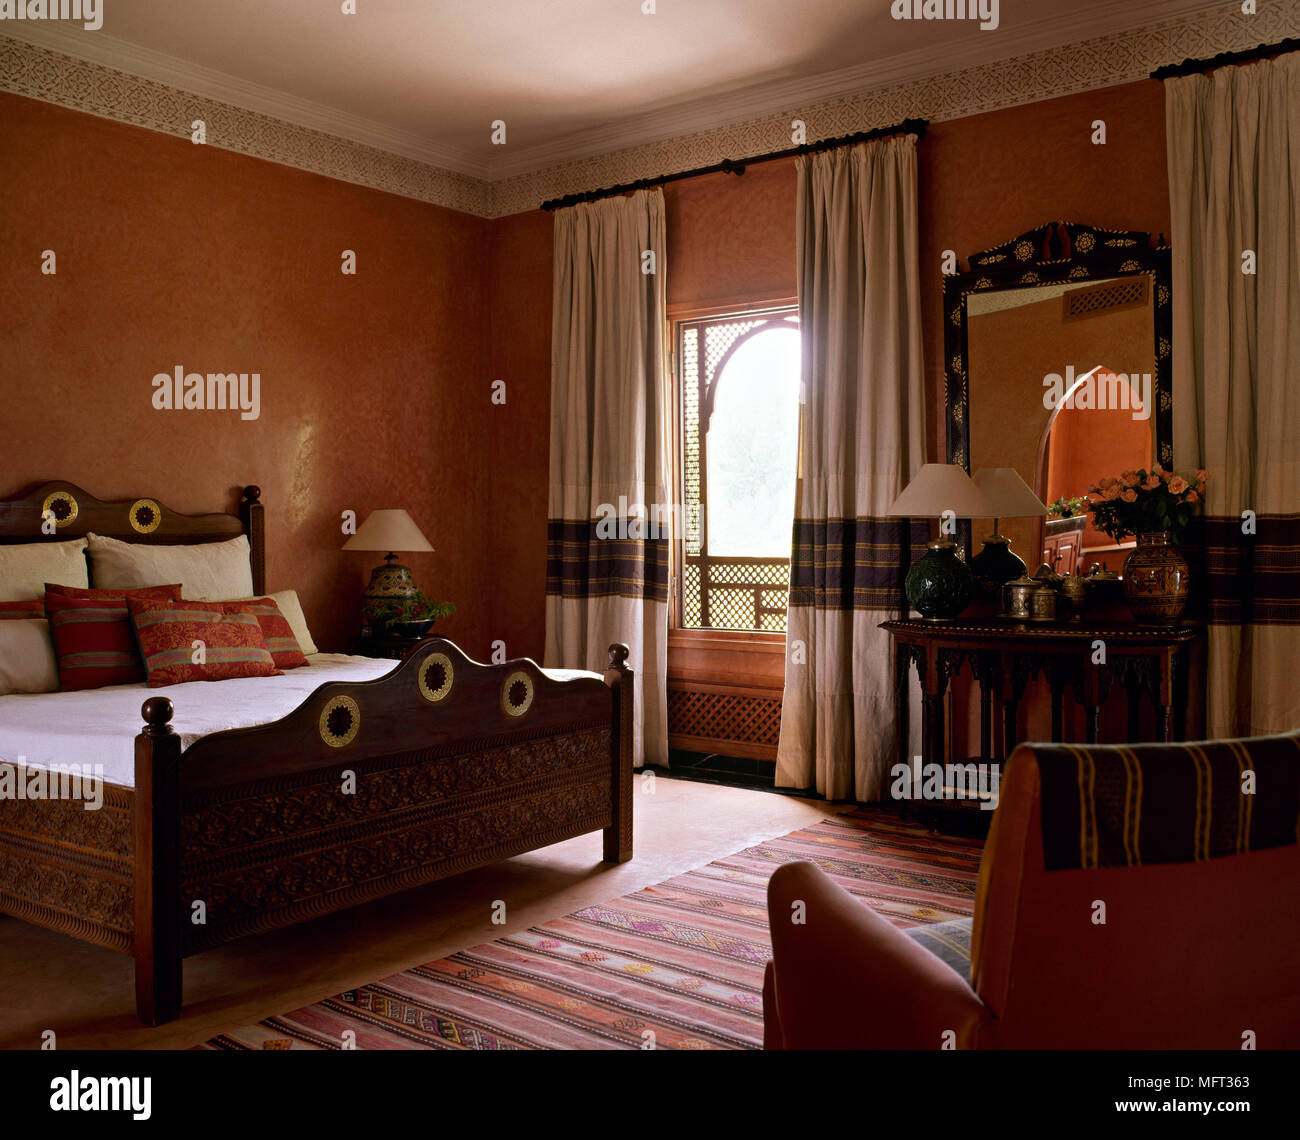 Suite de l'hôtel marocain en bois de chambre à coucher Lits Lit Interiors  hôtels arabe mauresque arabe riche tissus couleurs ethniques Photo Stock -  Alamy